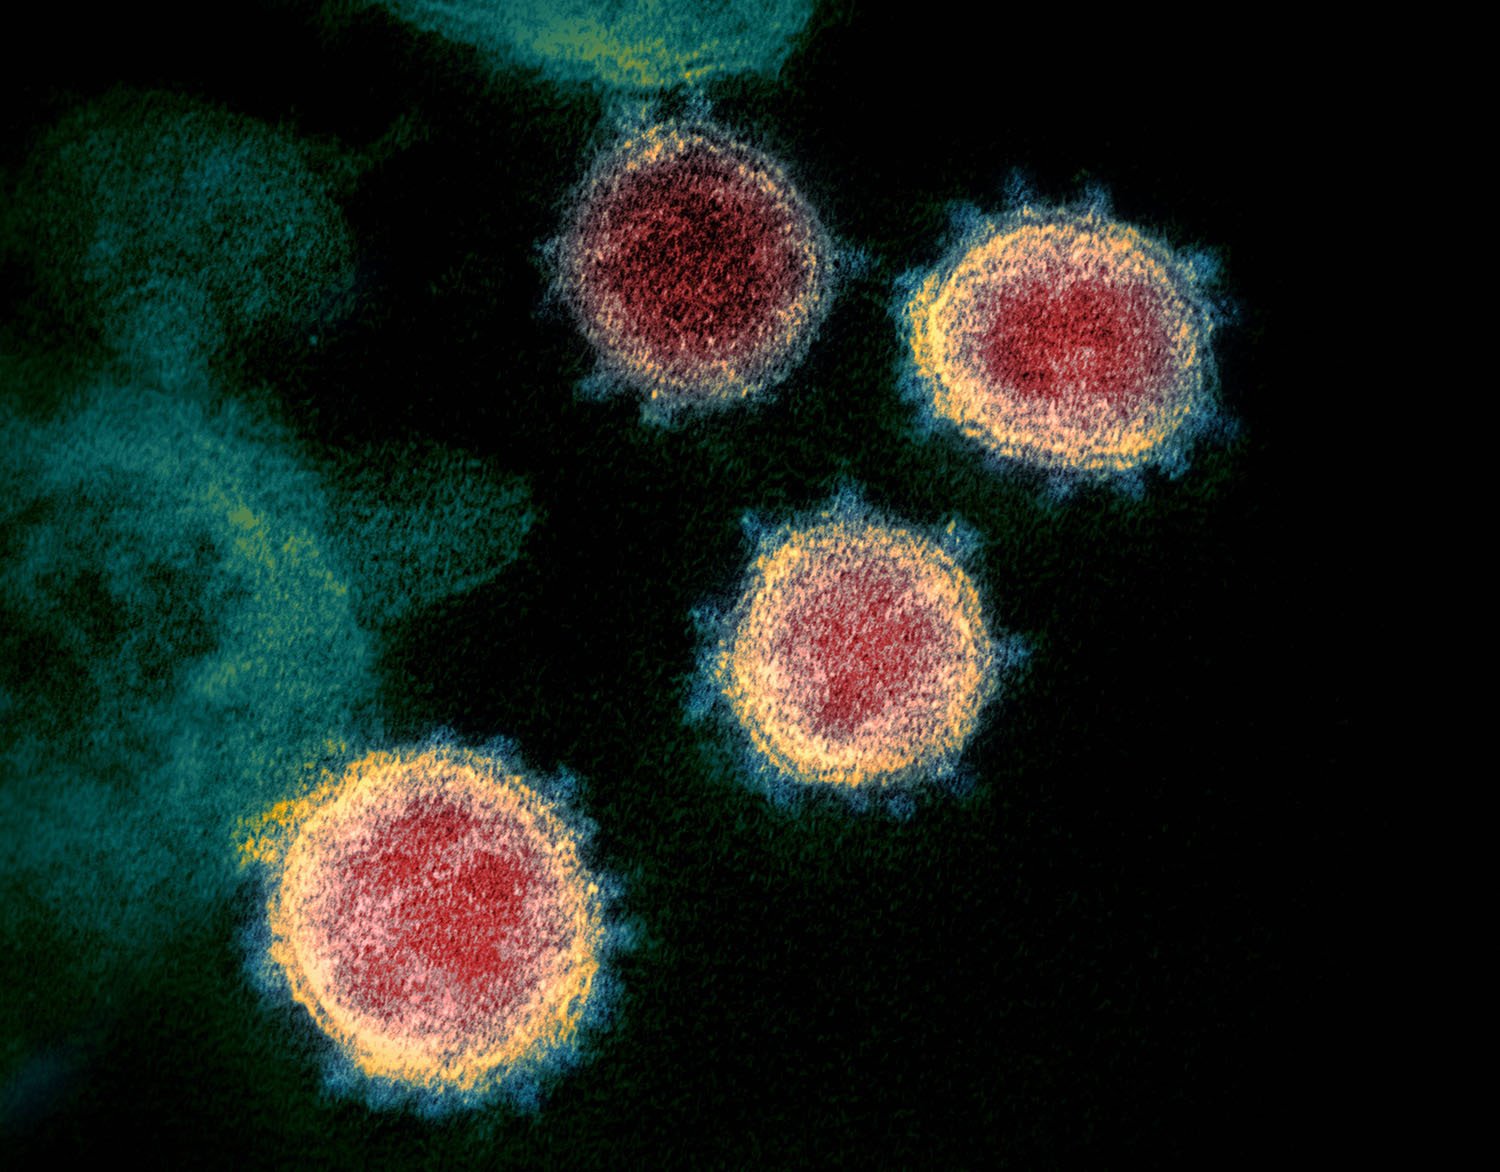 La humanidad sigue buscando respuestas para enfrentar el virus que aquí aparece en a foto, el SARS-CoV-2